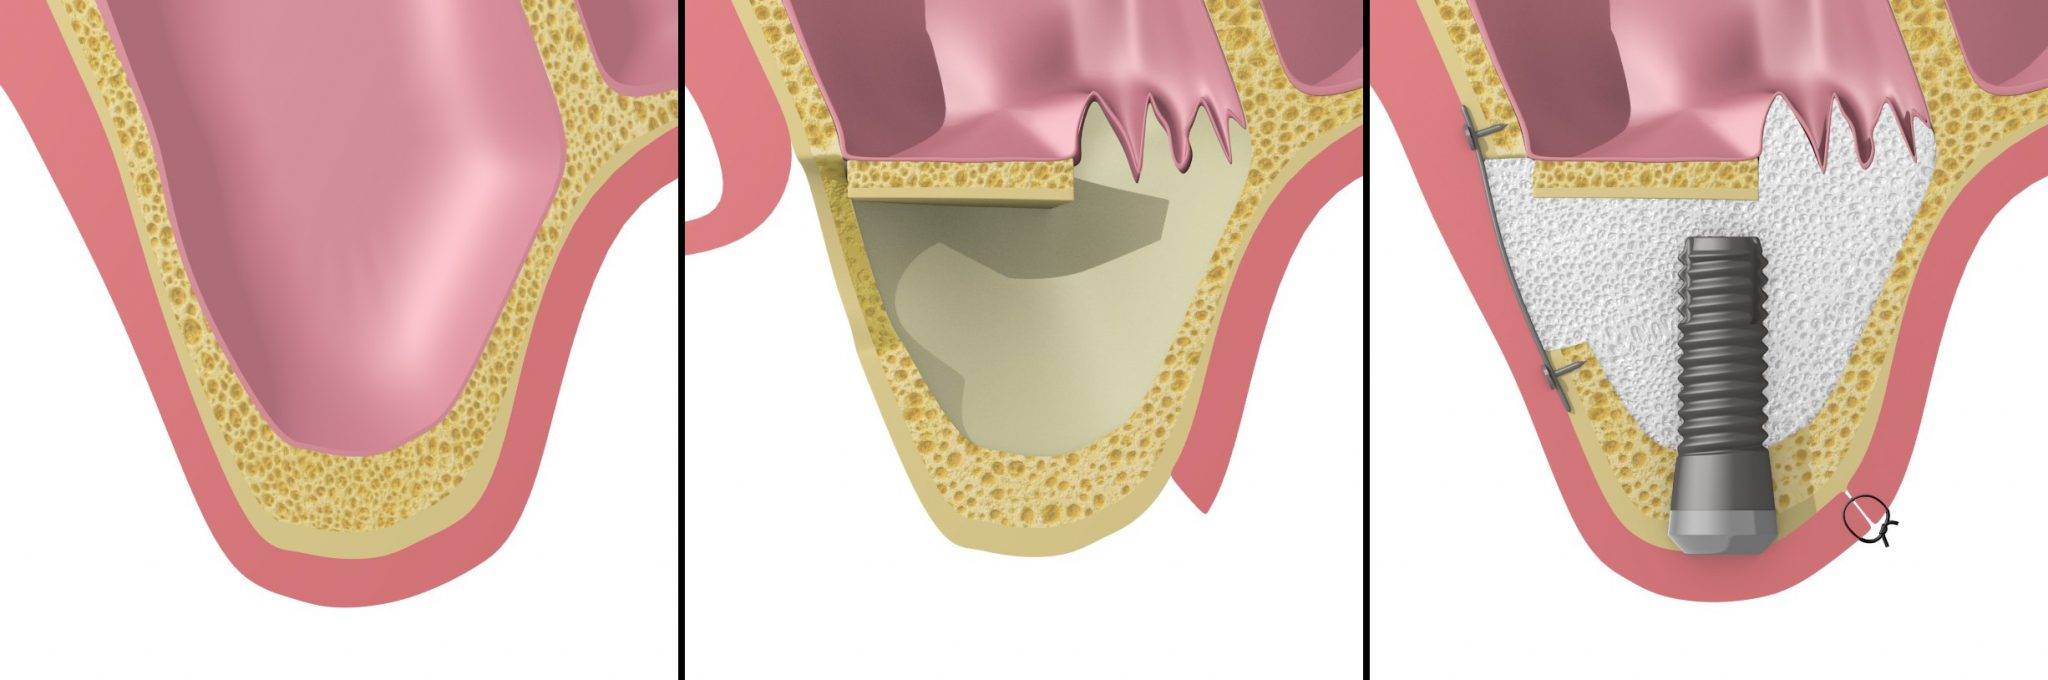 Отзывы о наращивании костной ткани при имплантации зубов